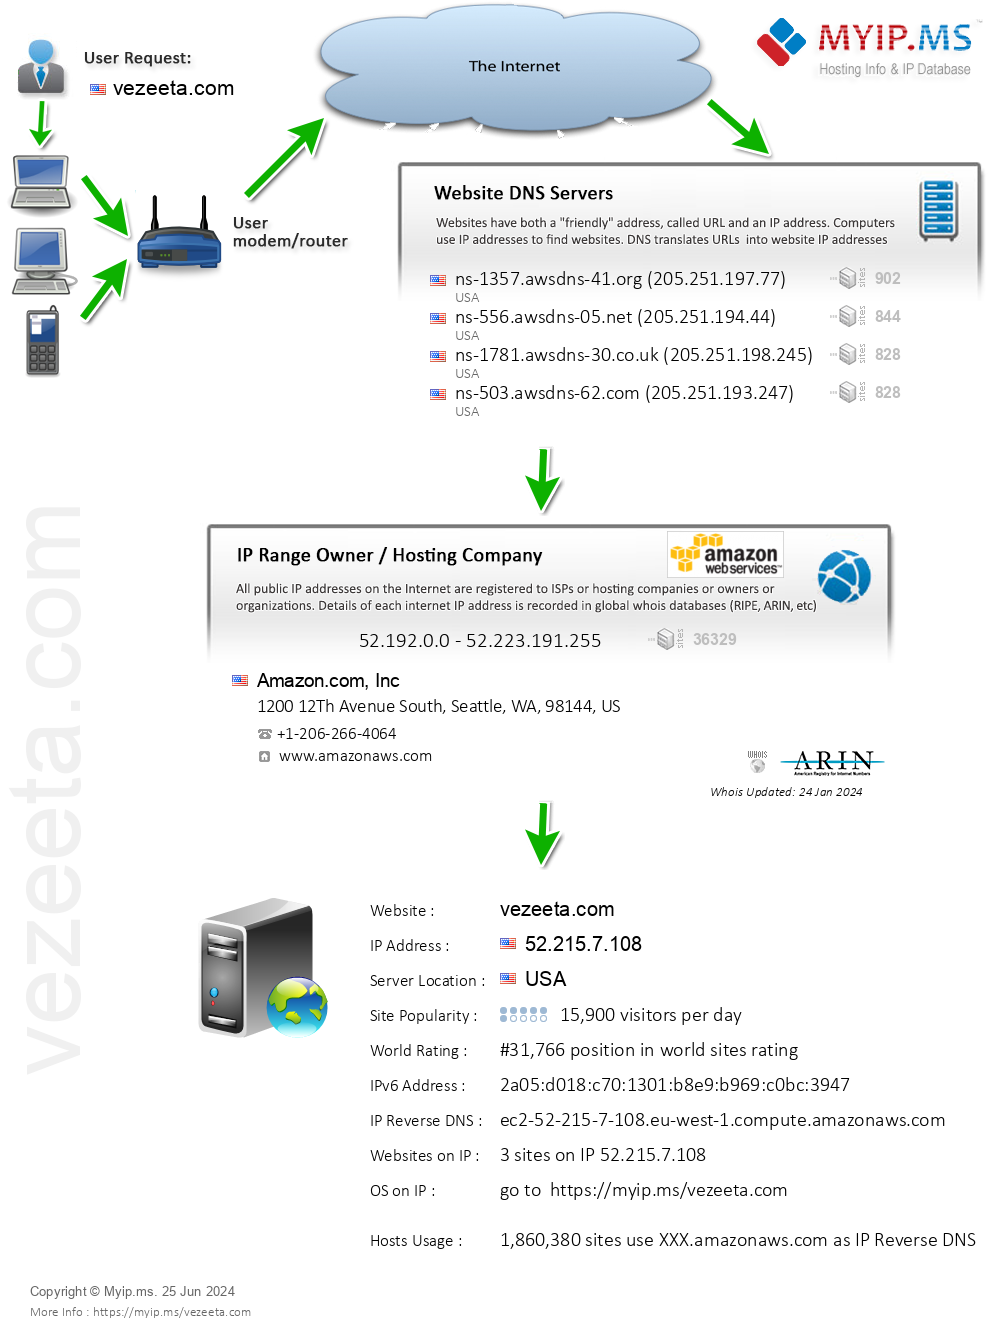 Vezeeta.com - Website Hosting Visual IP Diagram